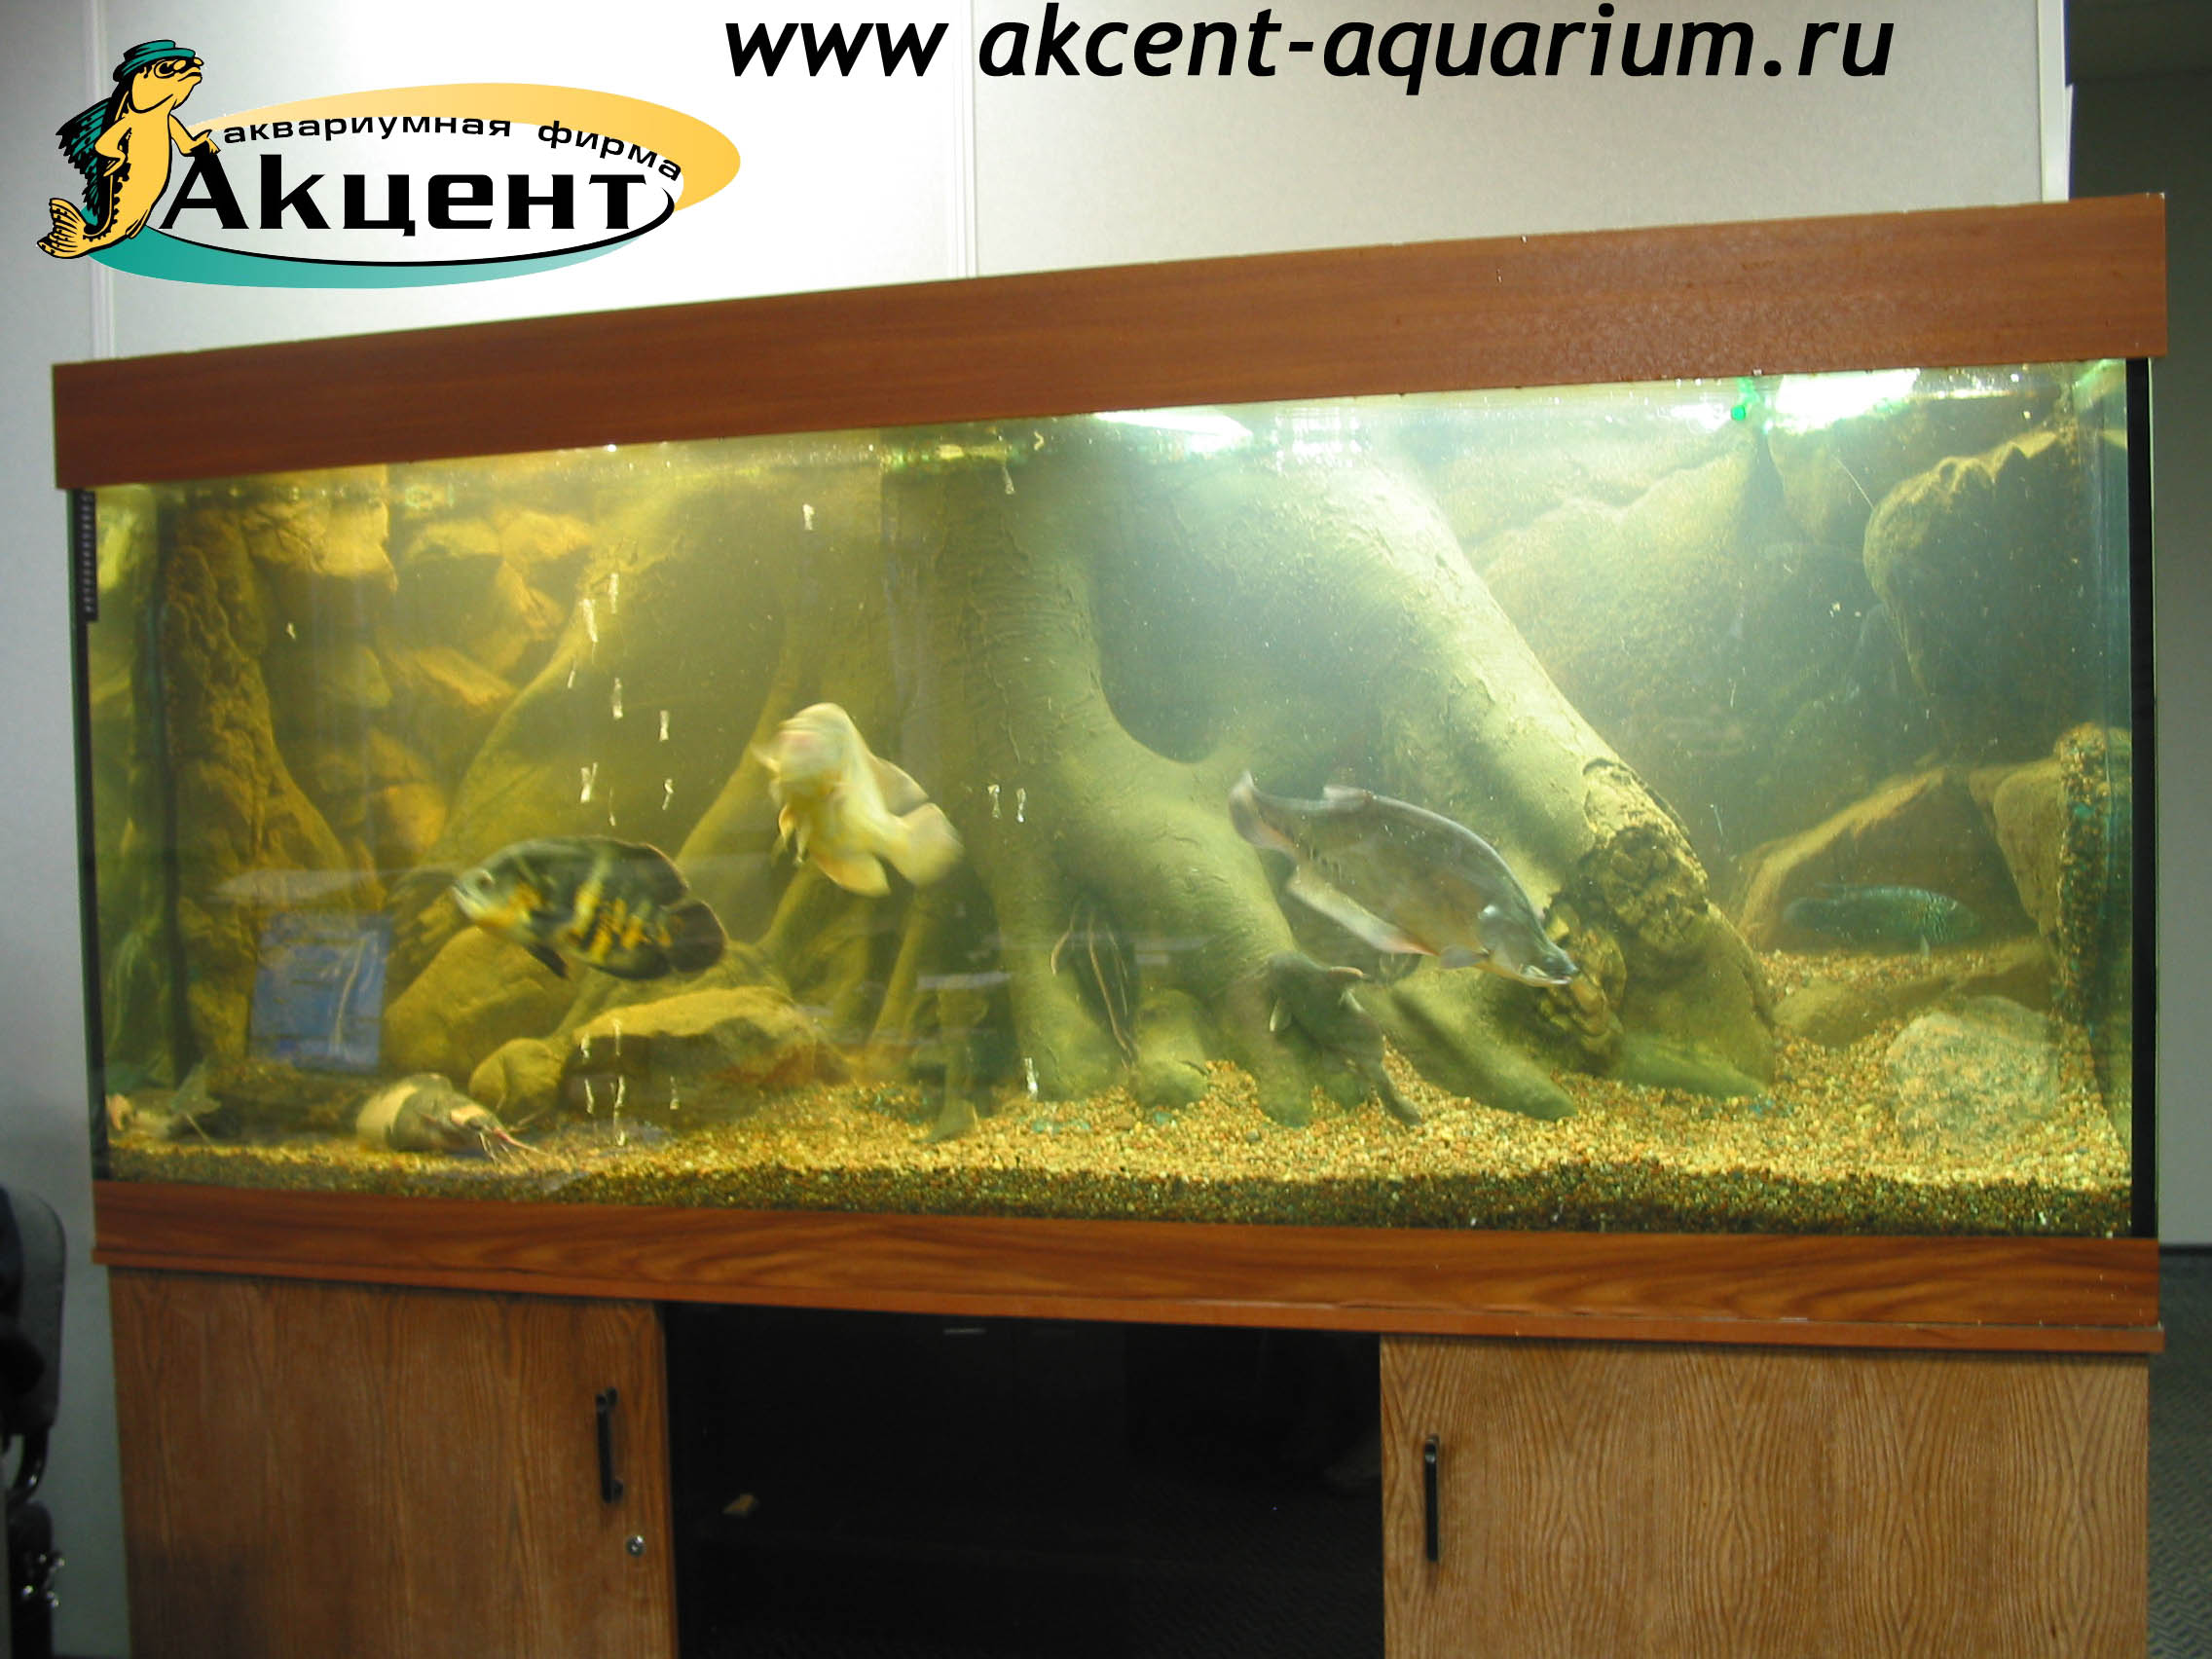 Акцент-аквариум,аквариум 500 литров